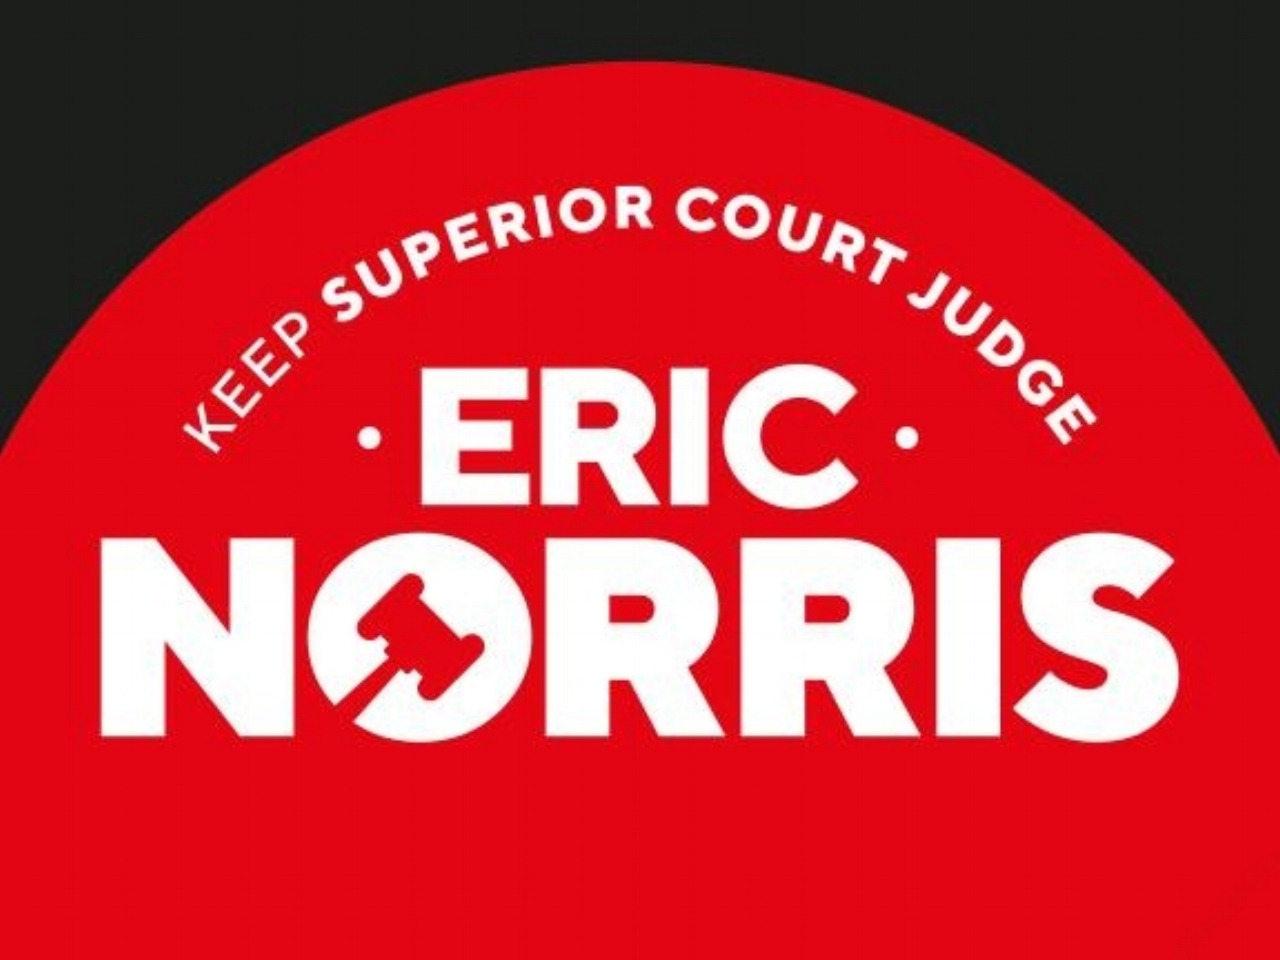 Keep Superior Court Judge Eric Norris